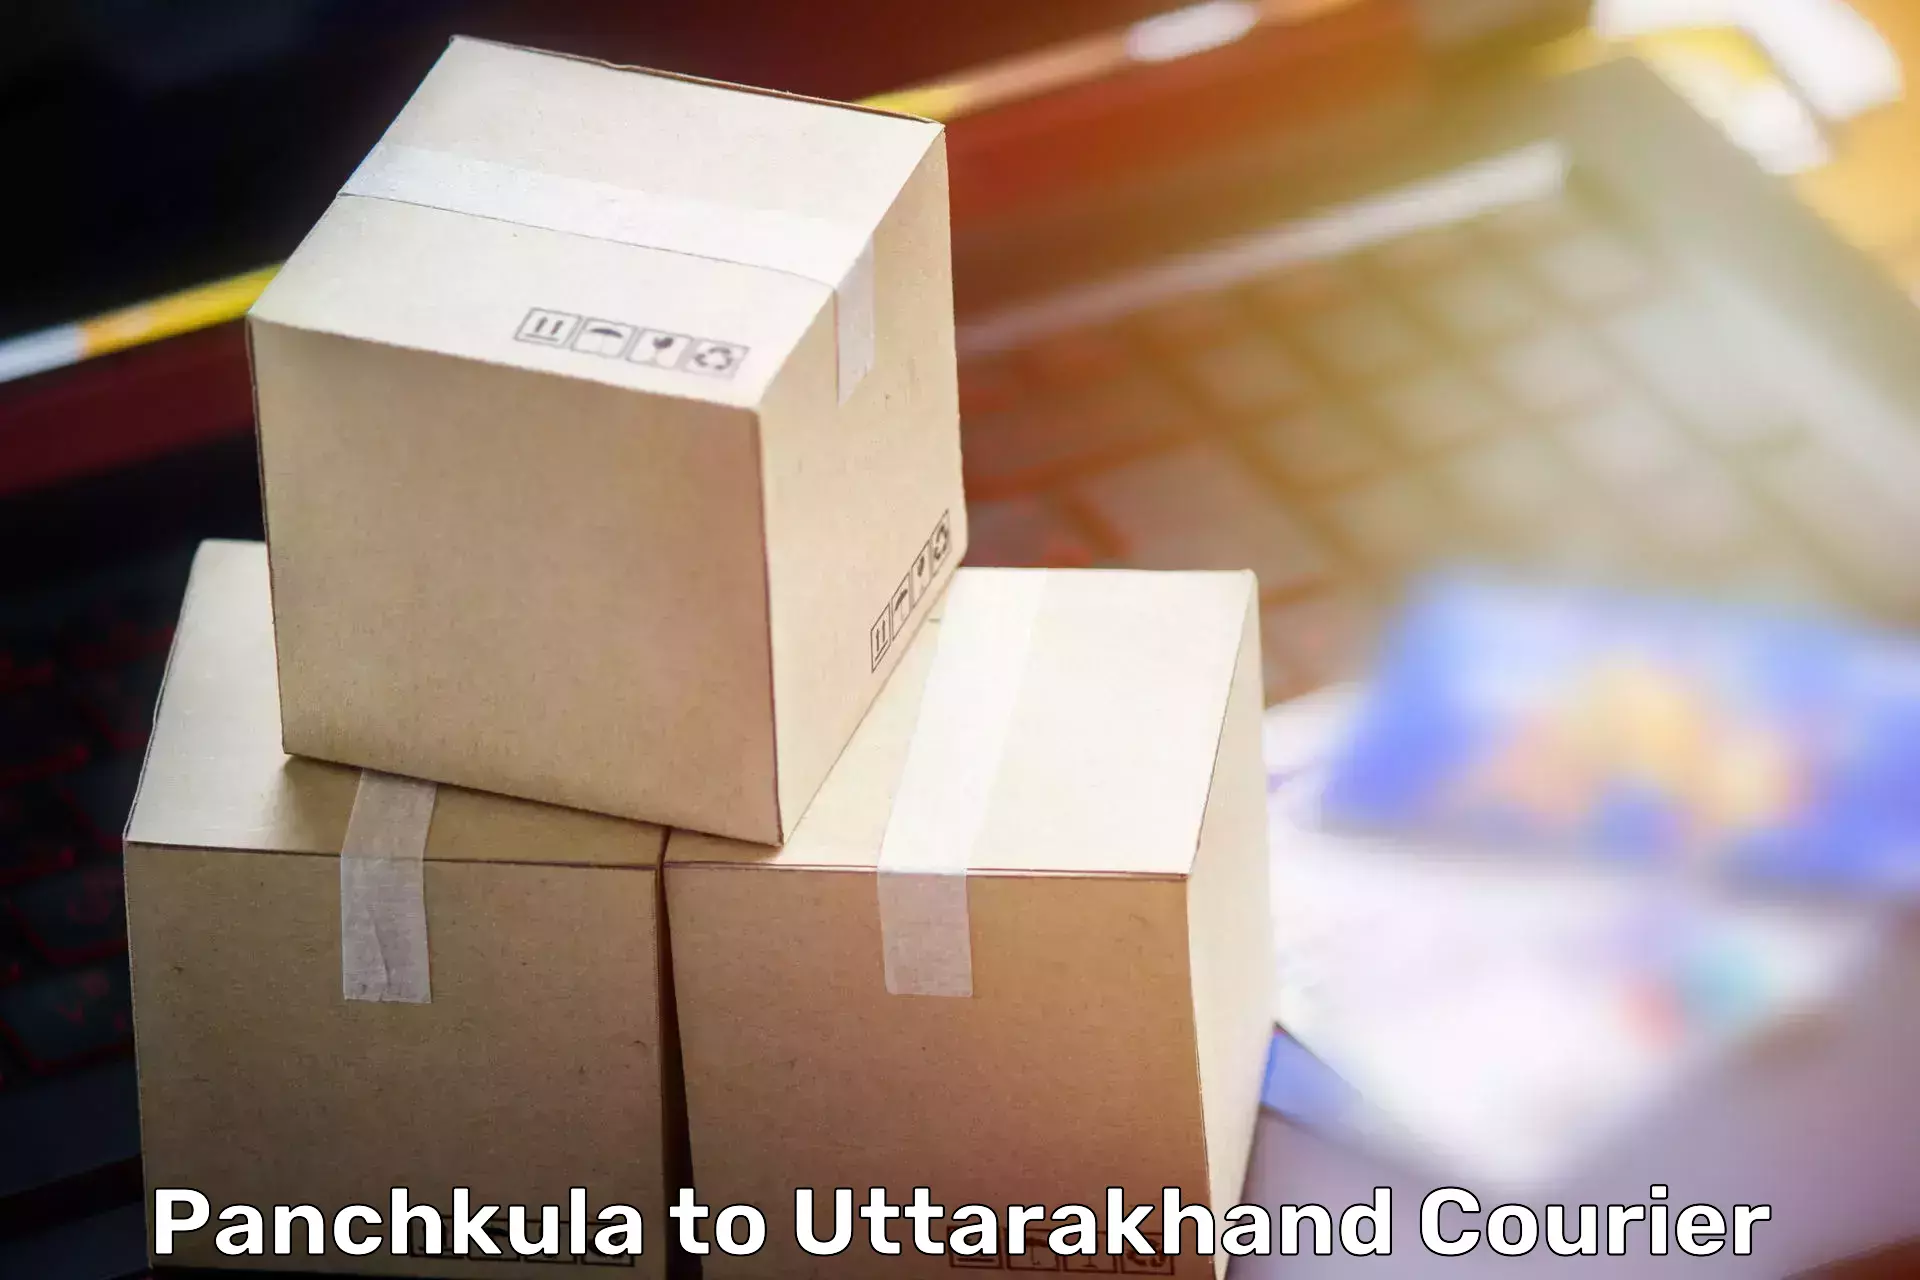 Home goods moving company Panchkula to NIT Garhwal